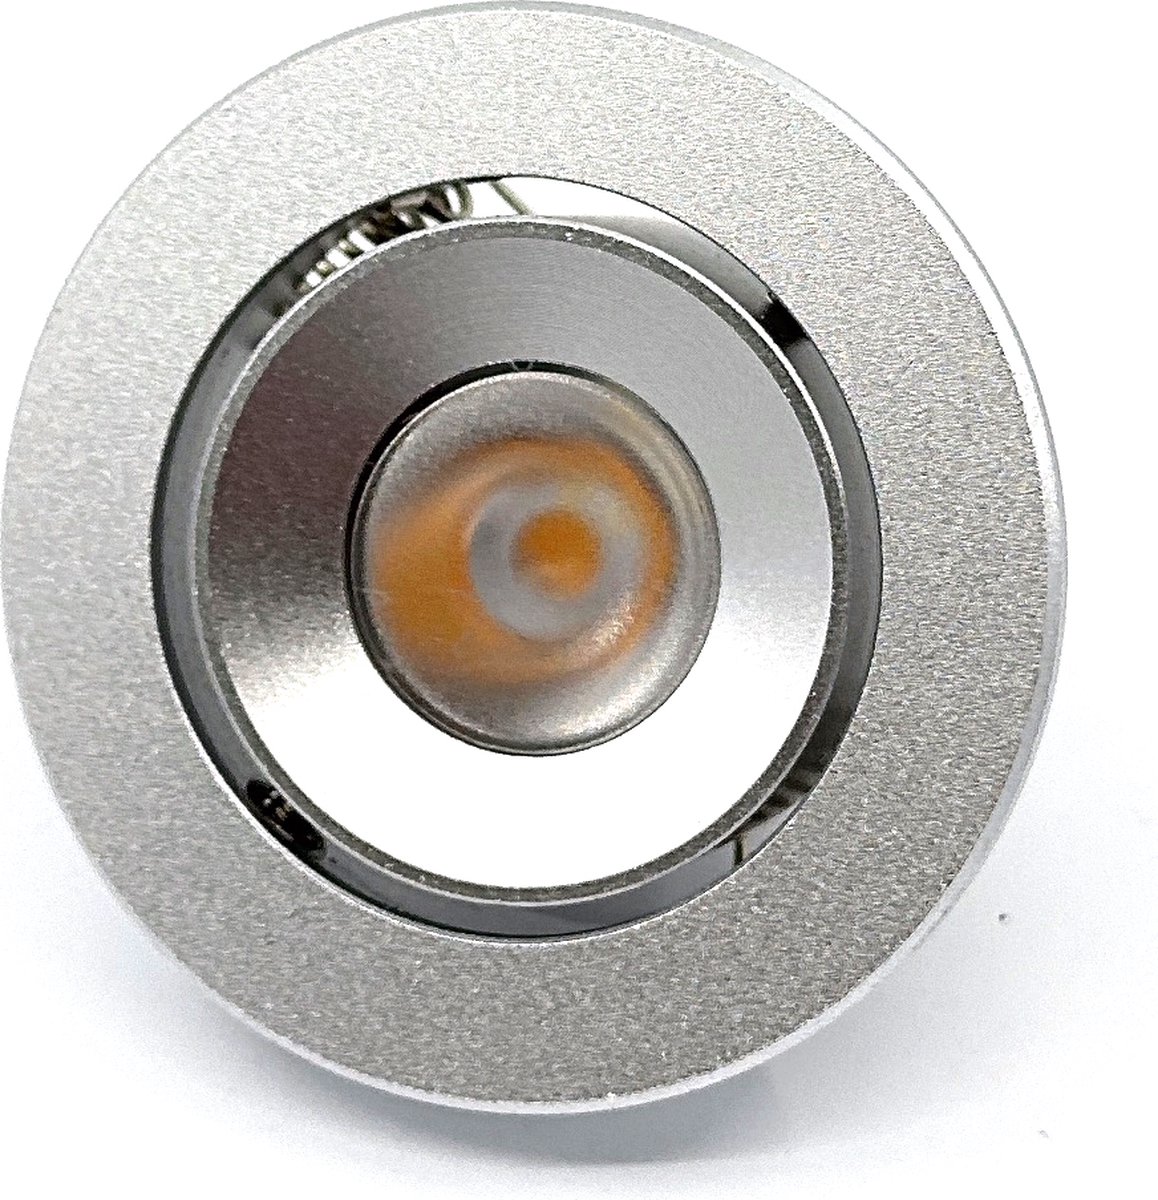 TQ4U LED inbouwspot - Ø 50 mm - Kantelbaar - 3.5W - 2800K - 350mA - Dimbaar - Grijs aluminium